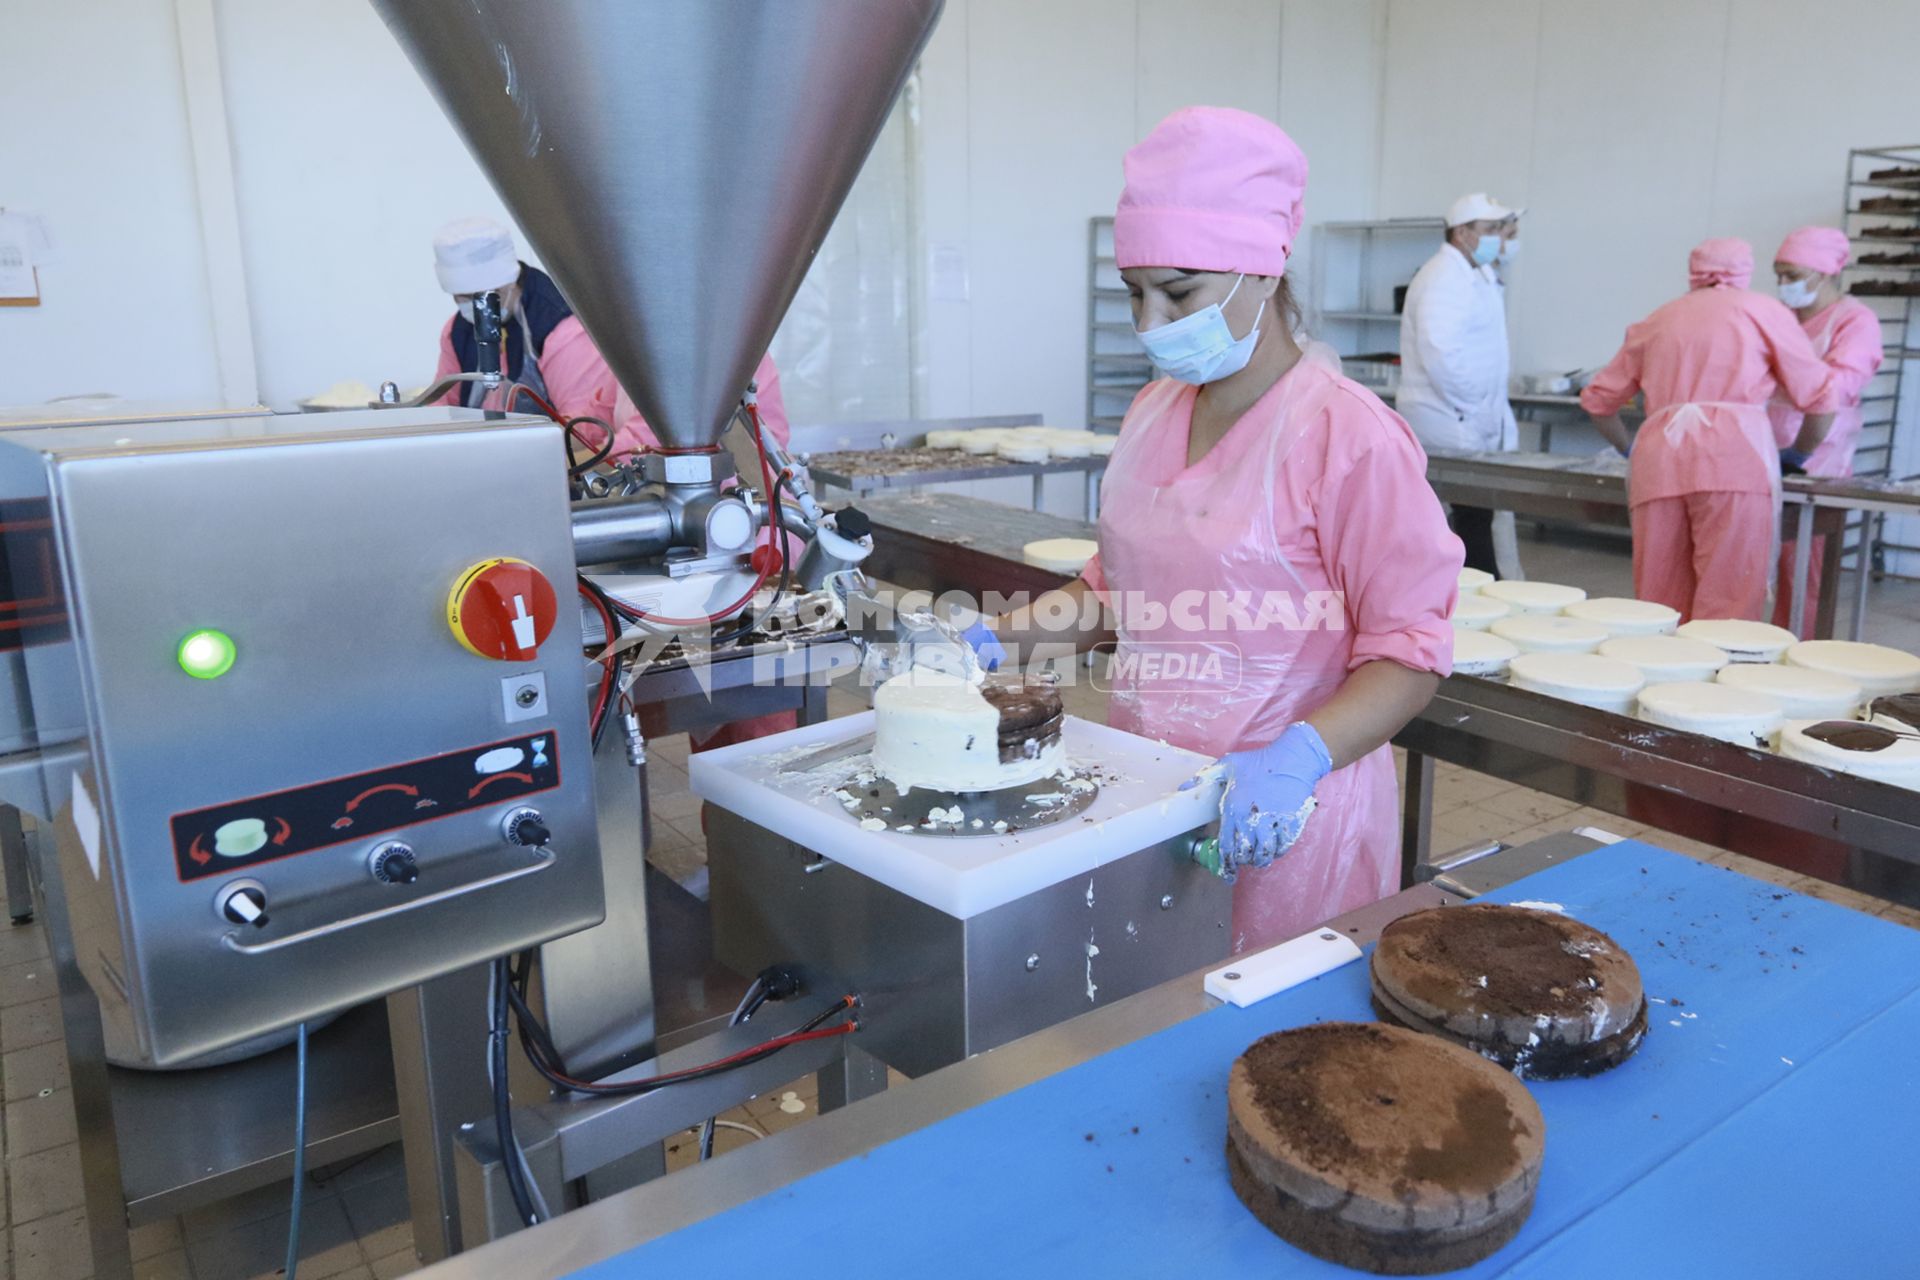 Барнаул. Работница наносит крем на торт с помощью дозатора на кондитерской фабрике.